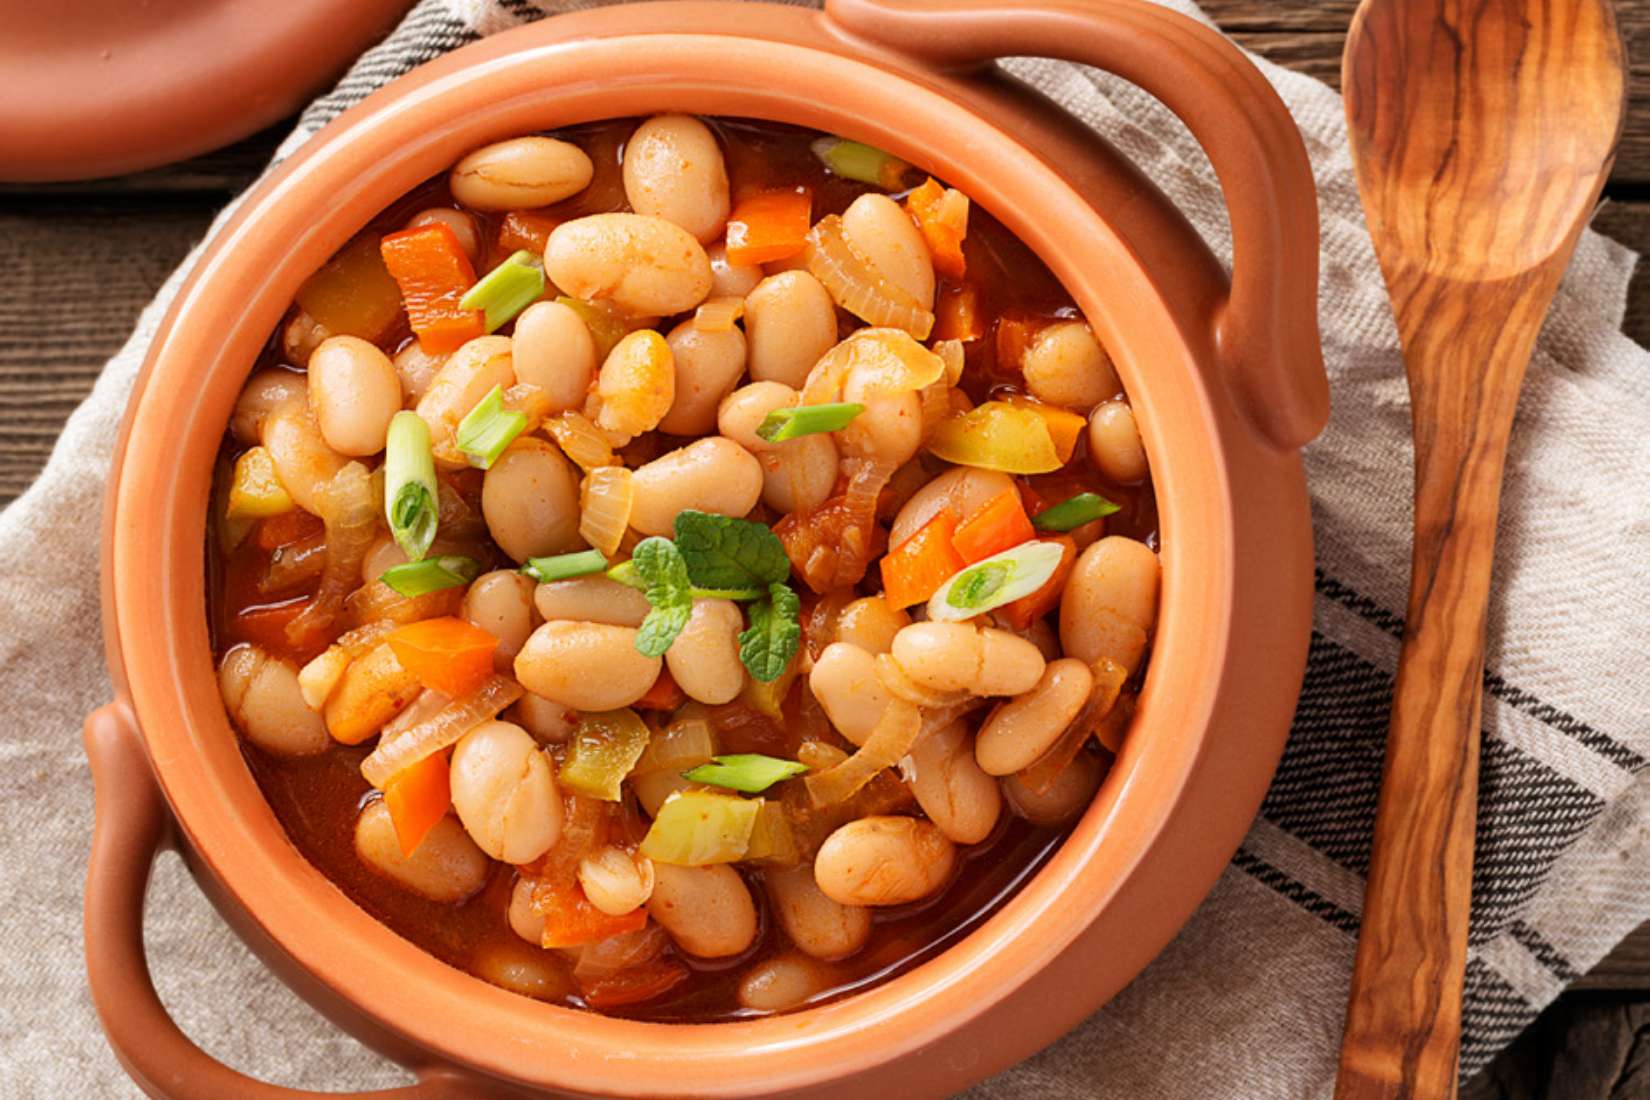 Contigo® Prewashed Pinto Beans